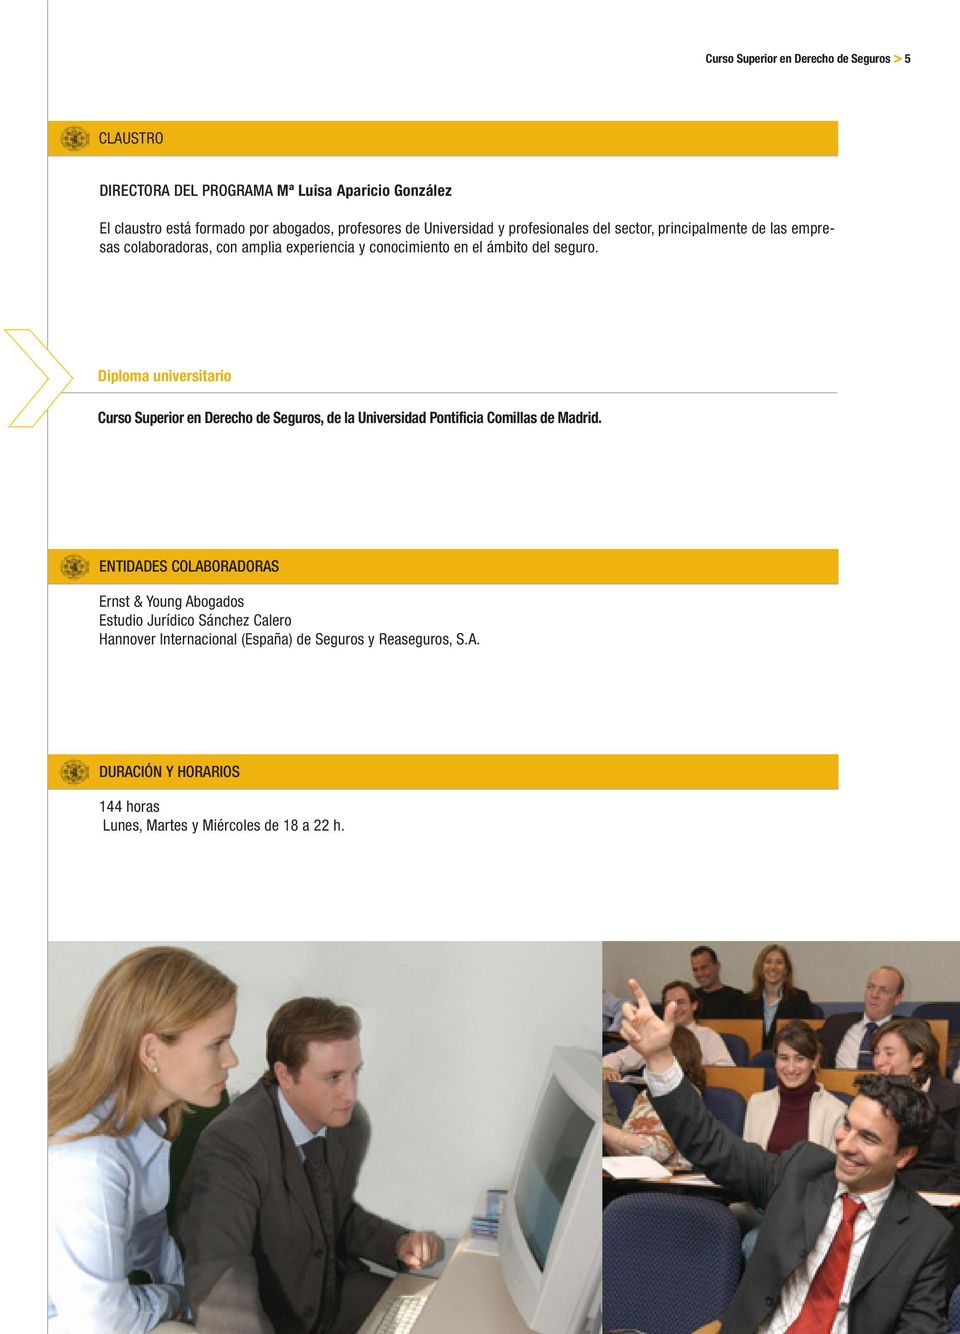 Diploma universitario Curso Superior en Derecho de Seguros, de la Universidad Pontificia Comillas de Madrid.